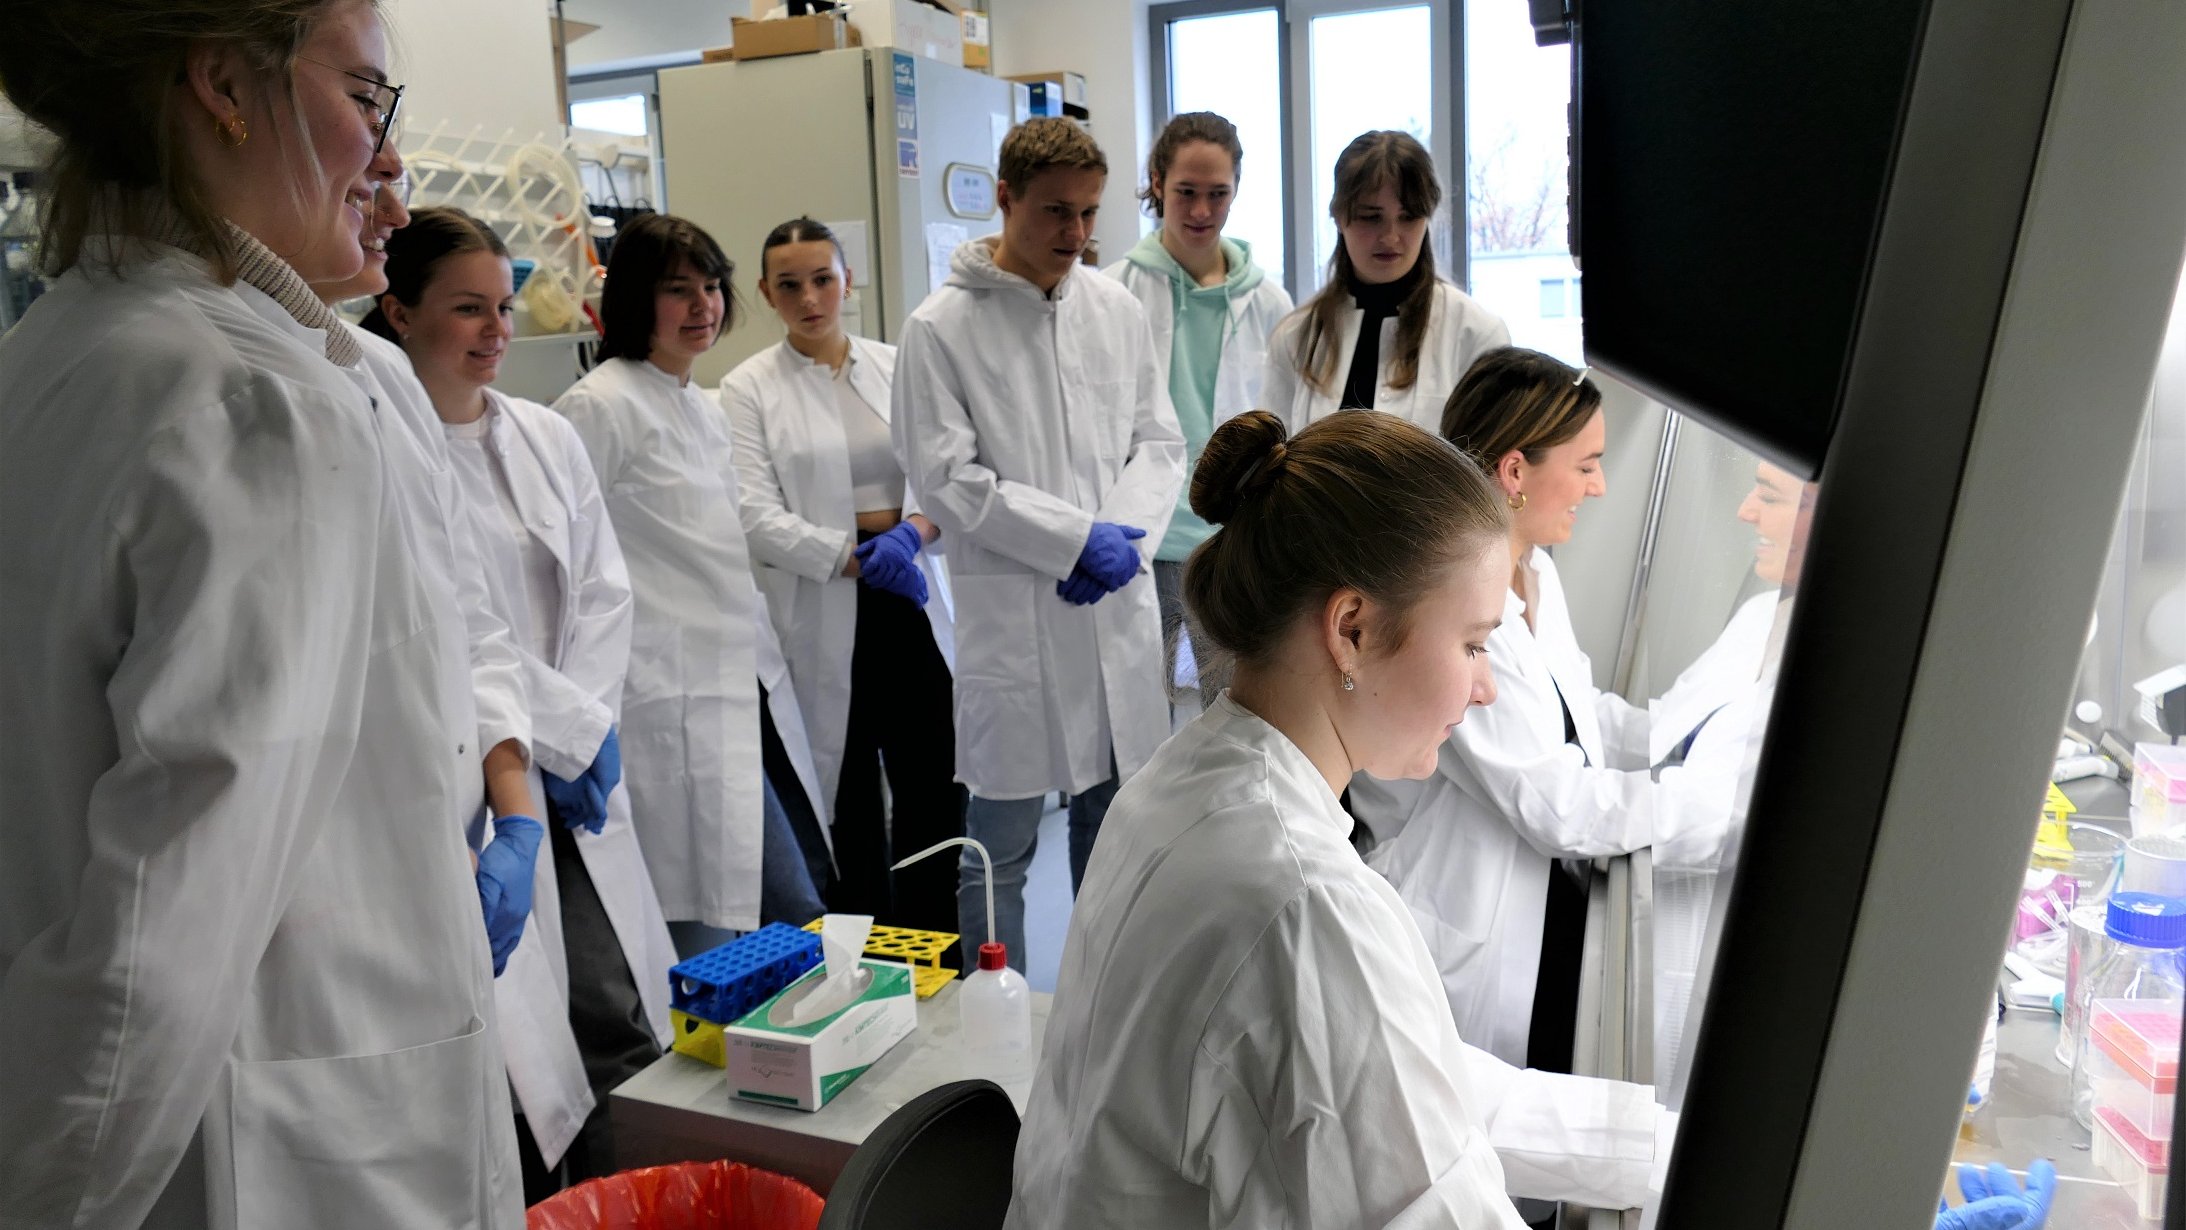 Mehrere junge Menschen stehen in weißen Kitteln in einem Labor und schauen einer anderen Person zu, die an einem Tisch ein Experiment durchführt. 